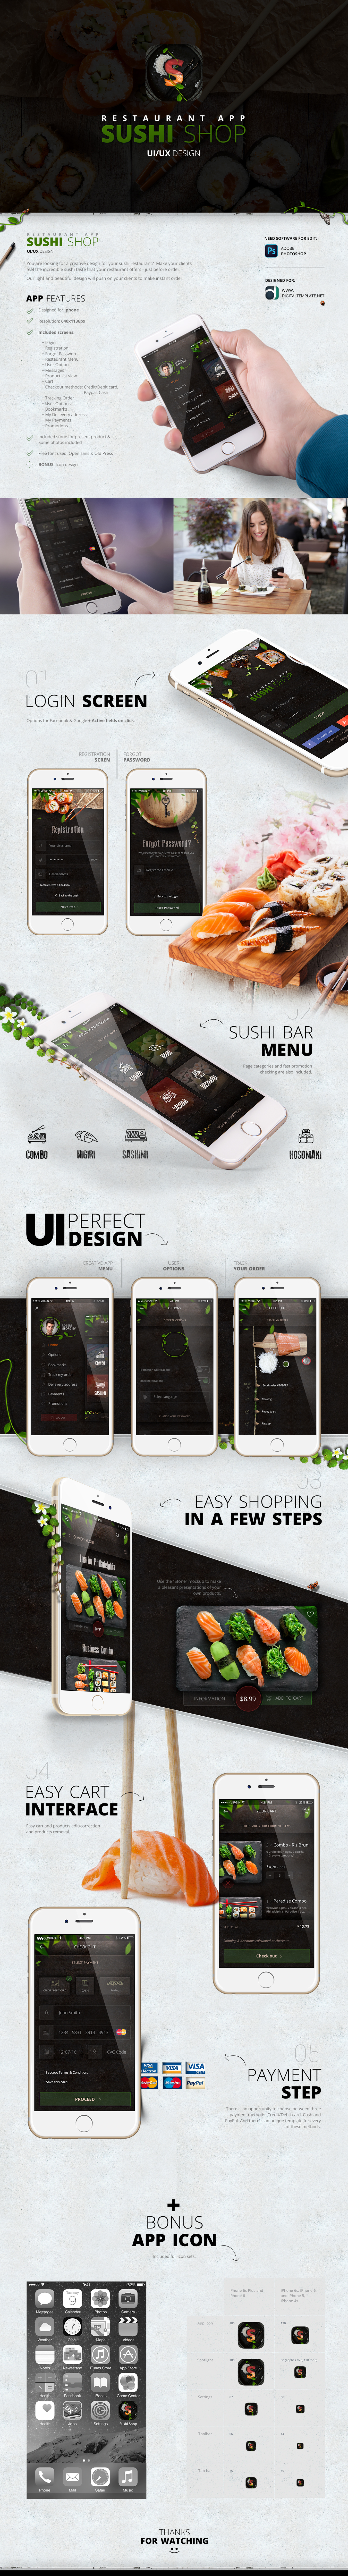 Sushi app iphone app design fresh restaurant